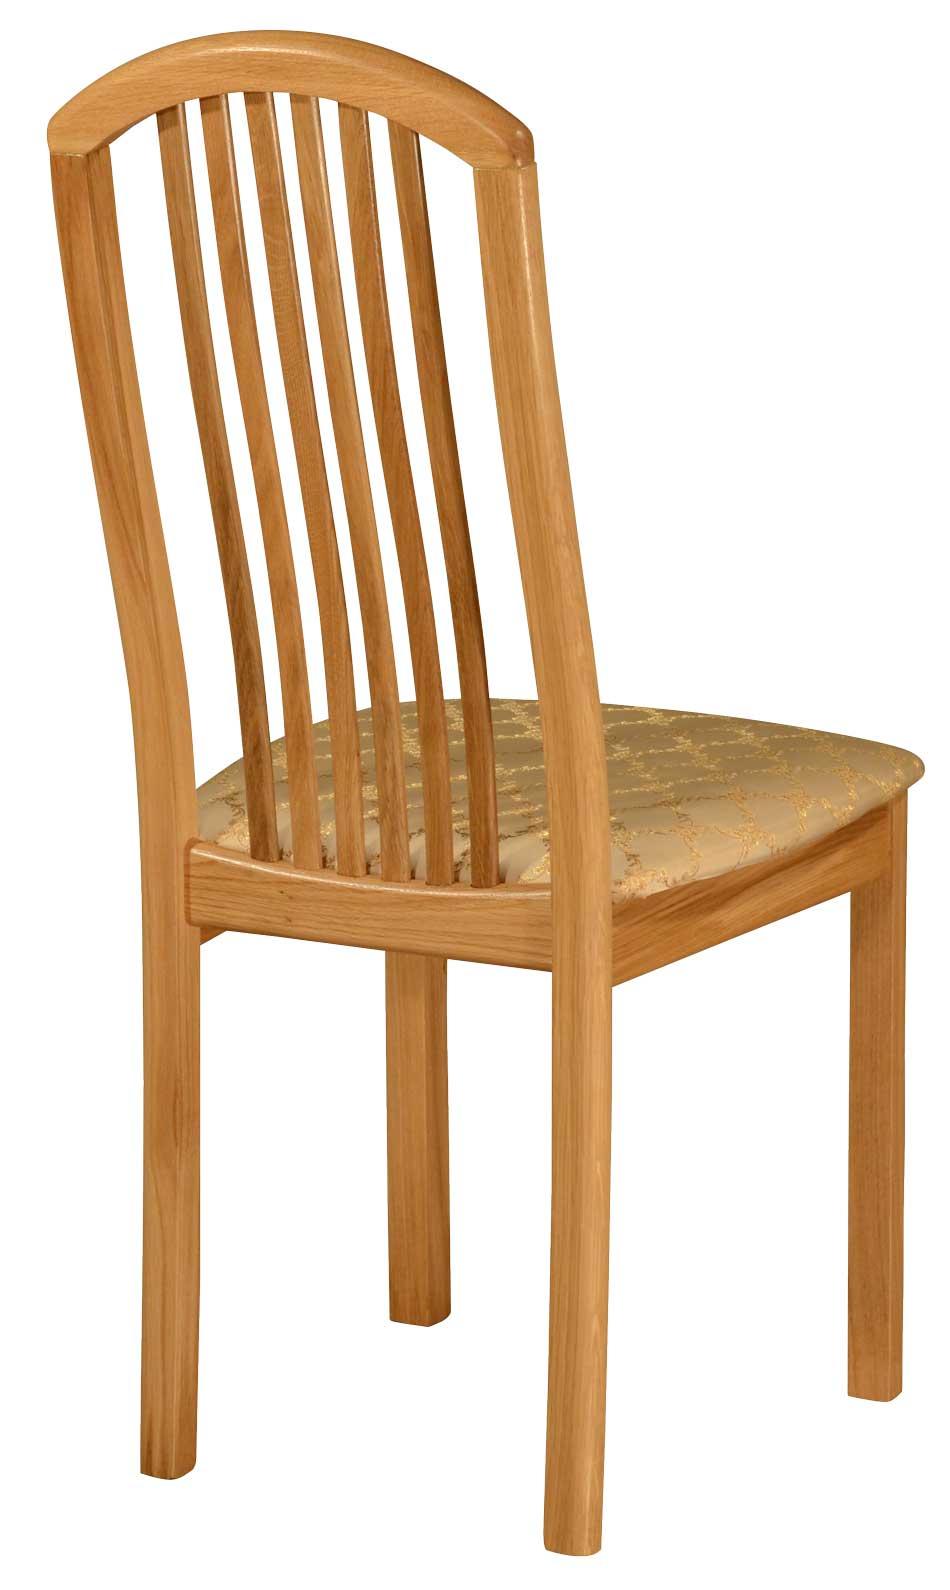 Купить стул Оримэкс Стул Оримэкс Поло-2 дешево на официальном сайте